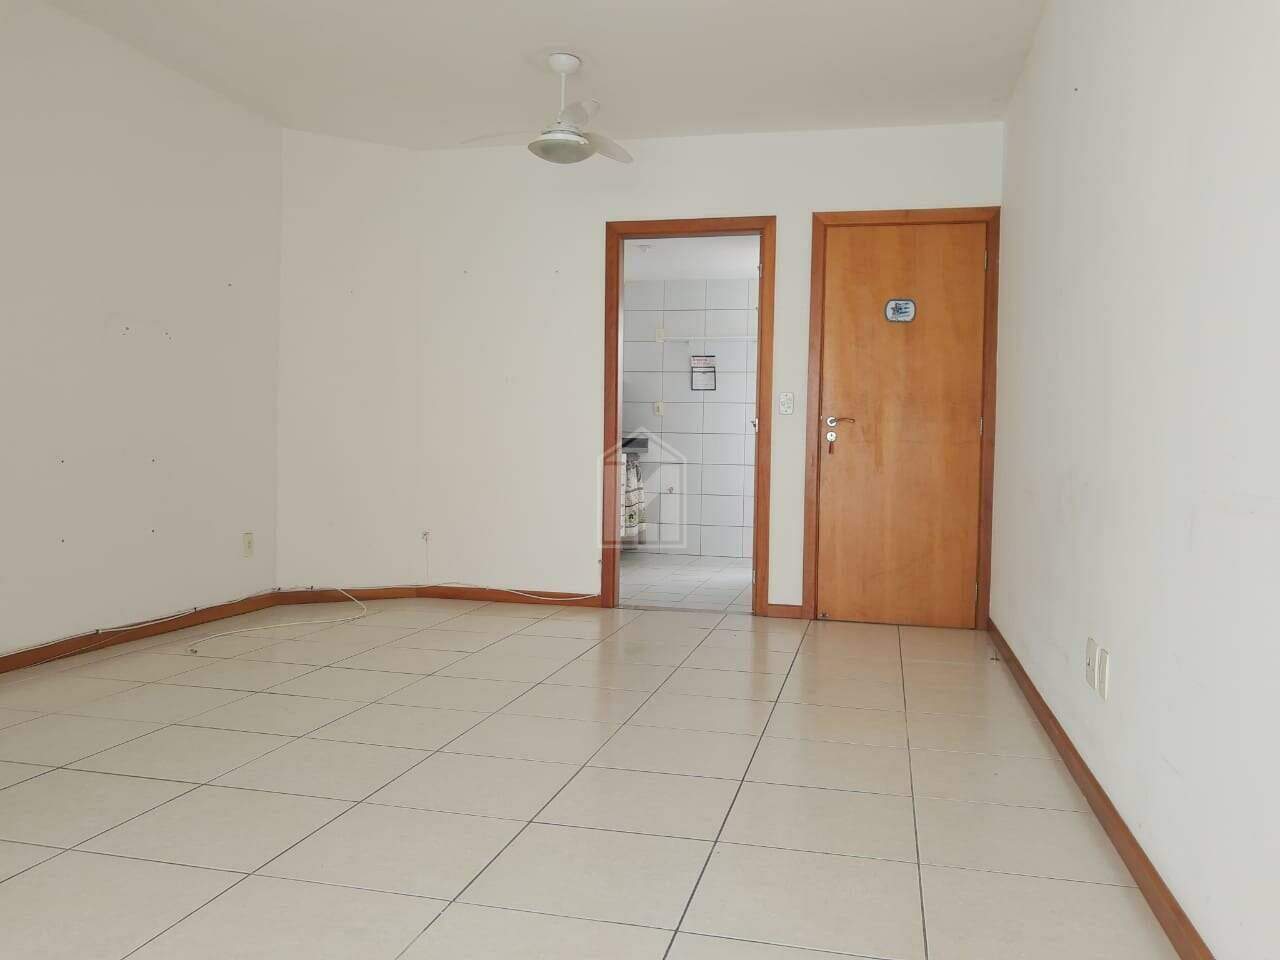 Apartamento, 2 quartos, 72 m² - Foto 2